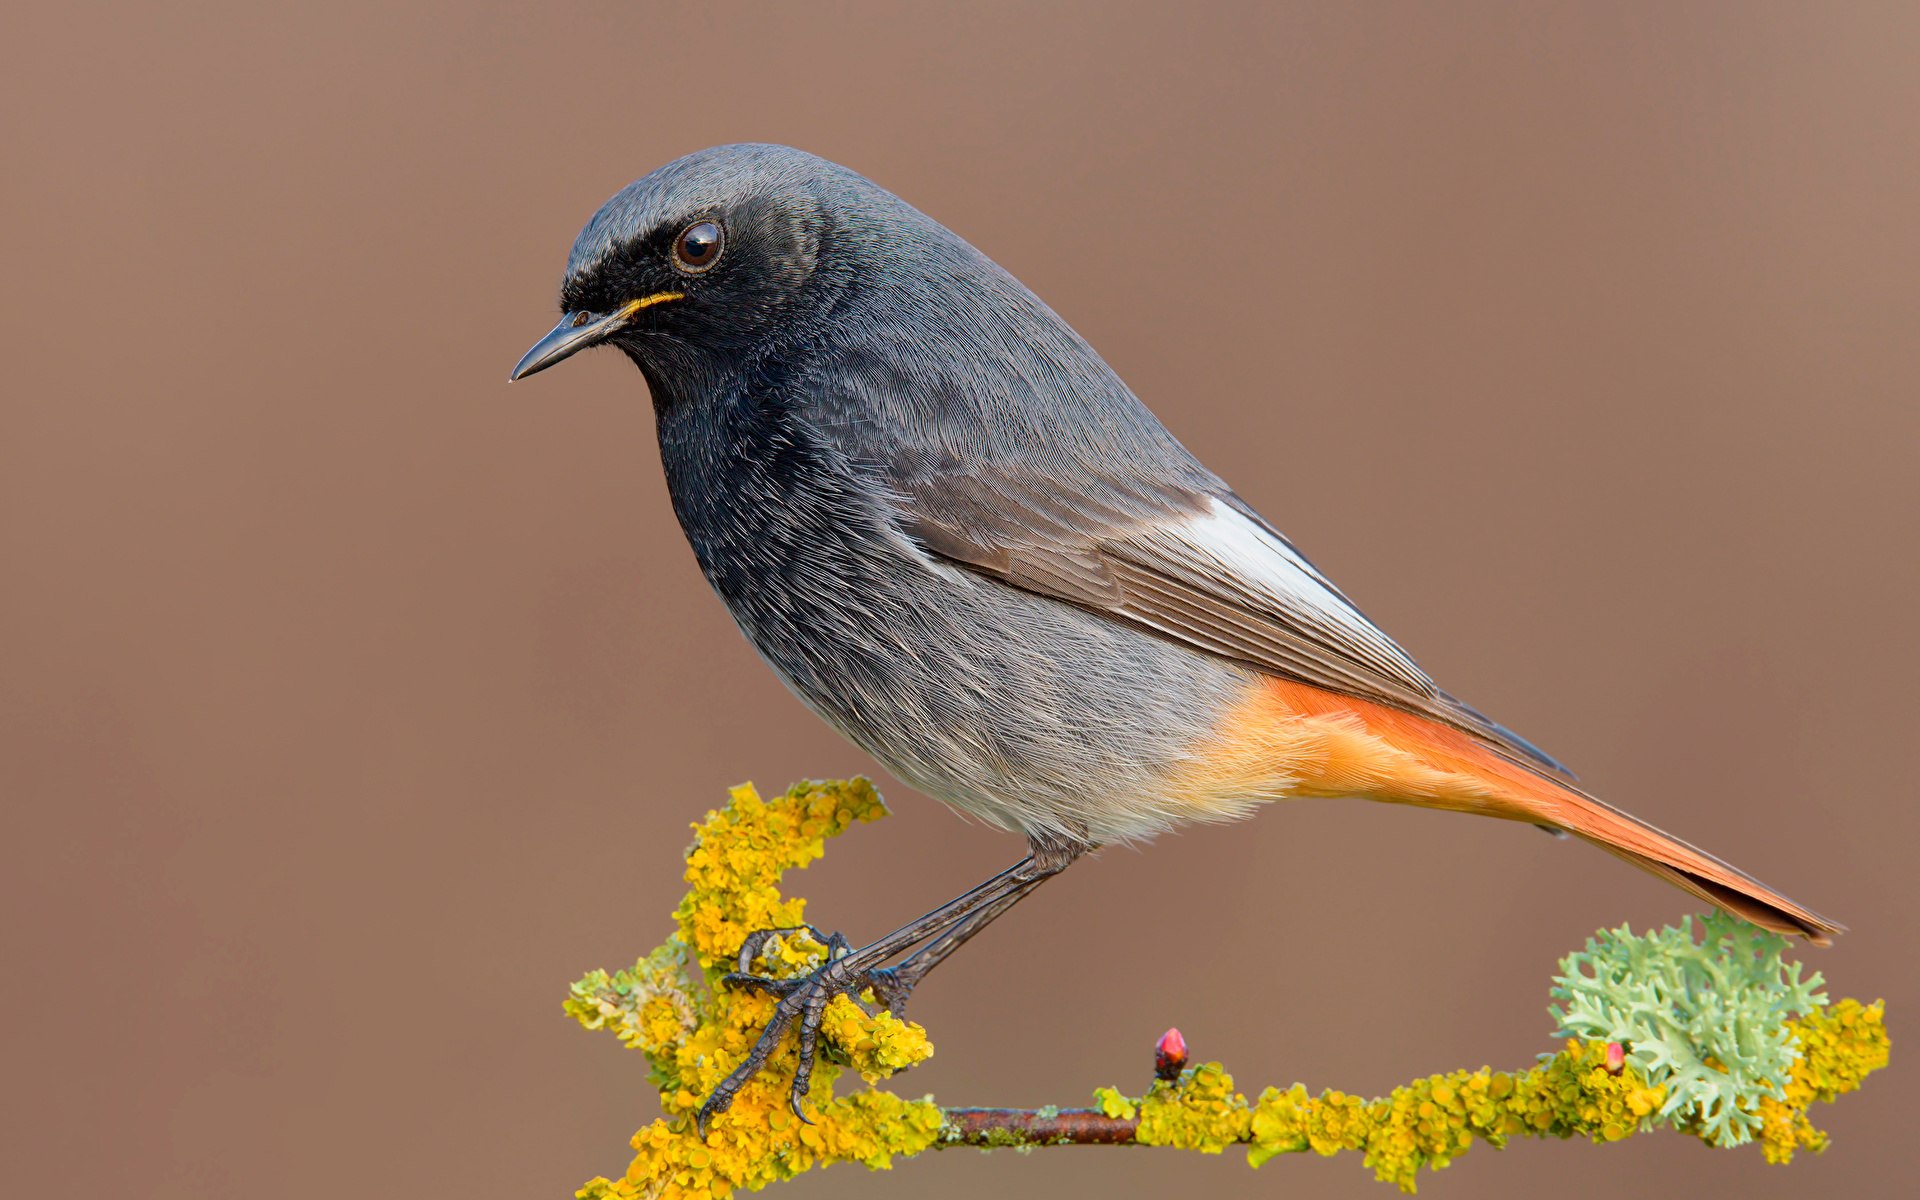 Маленькая темная птичка с оранжевым хвостом фото